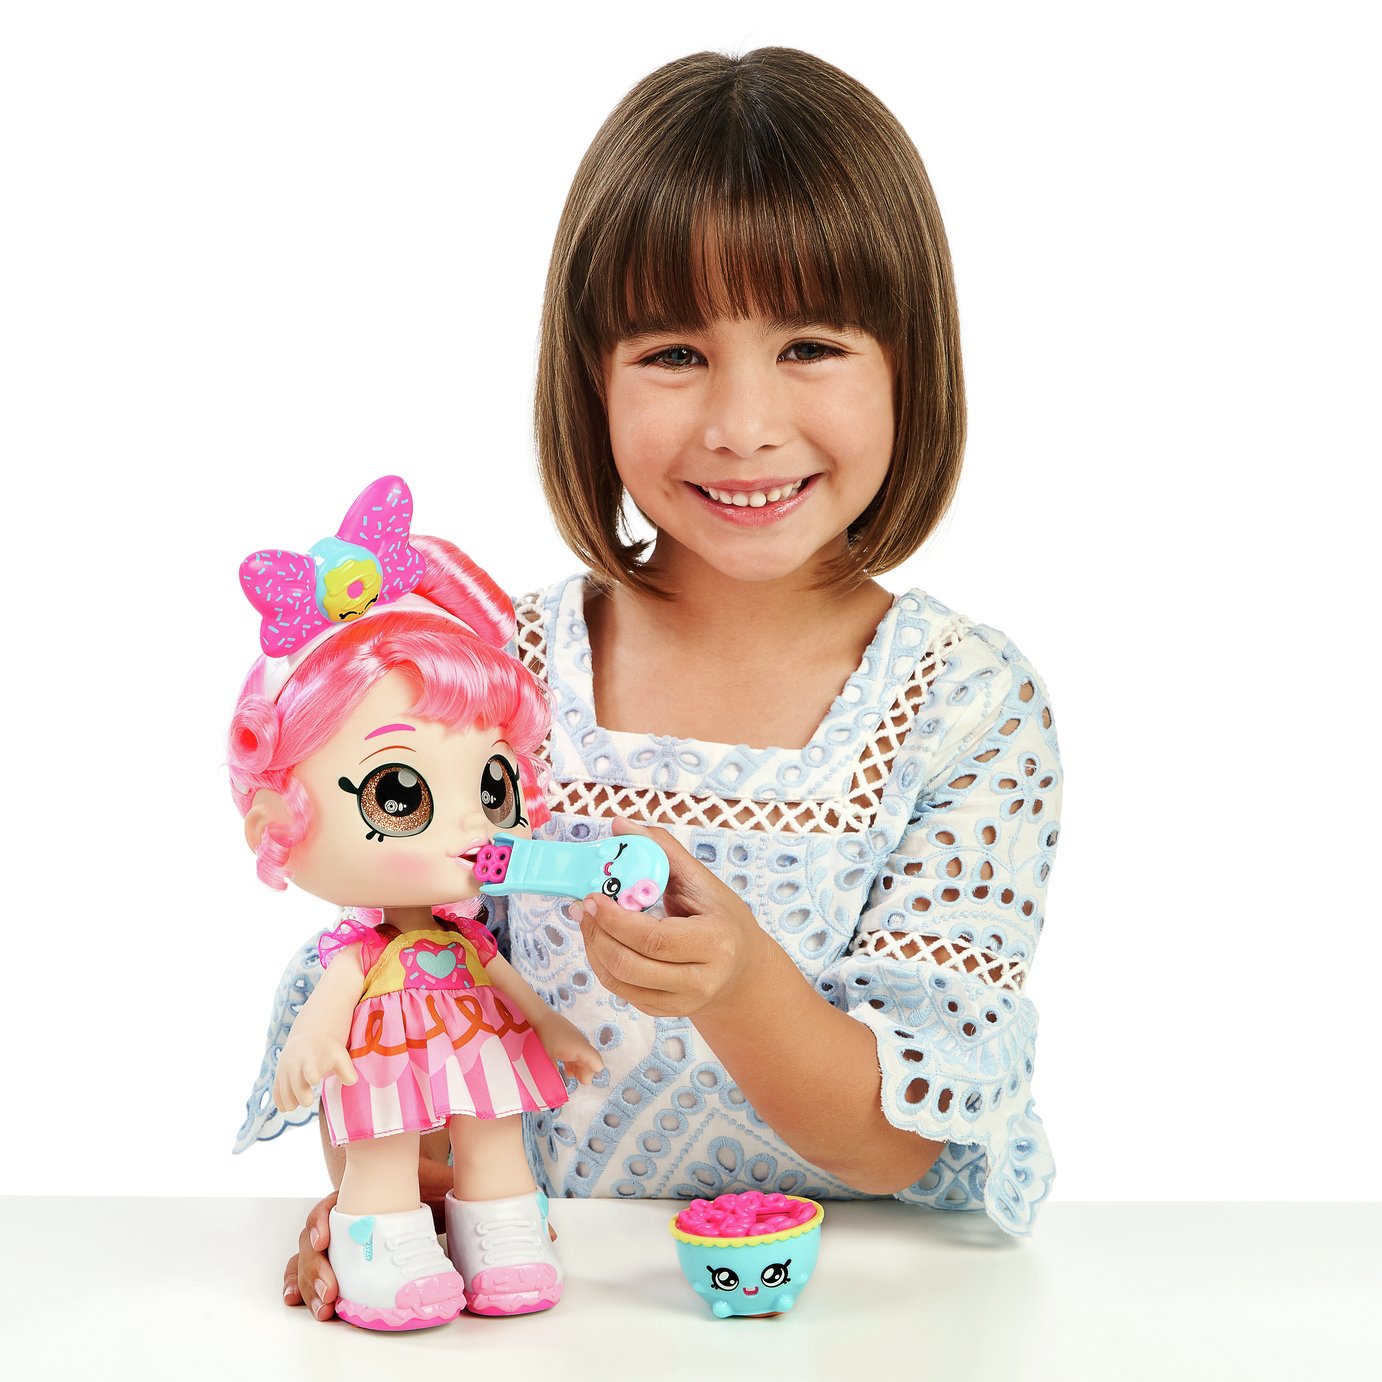 Kindi Kids Donatina Toddler Doll Review